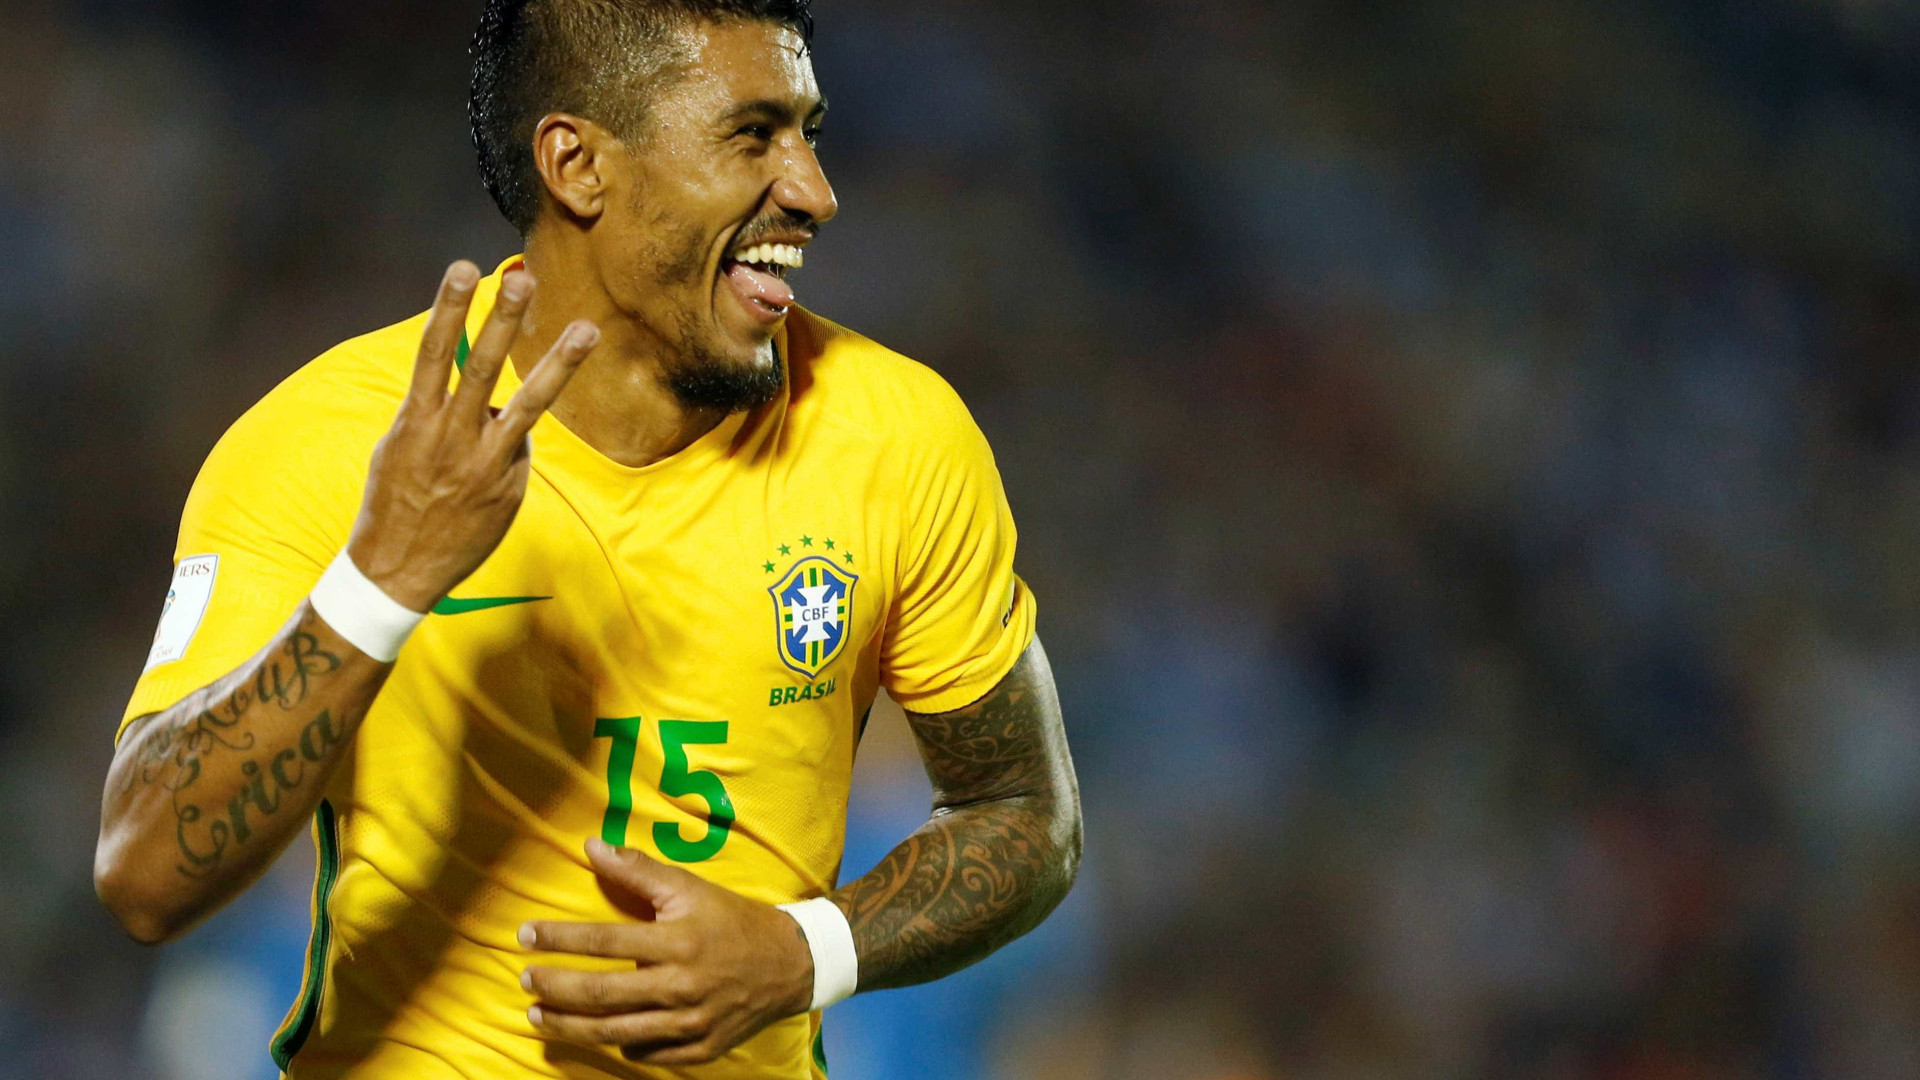 Baile da seleção brasileira no Uruguai
repercute na imprensa gringa